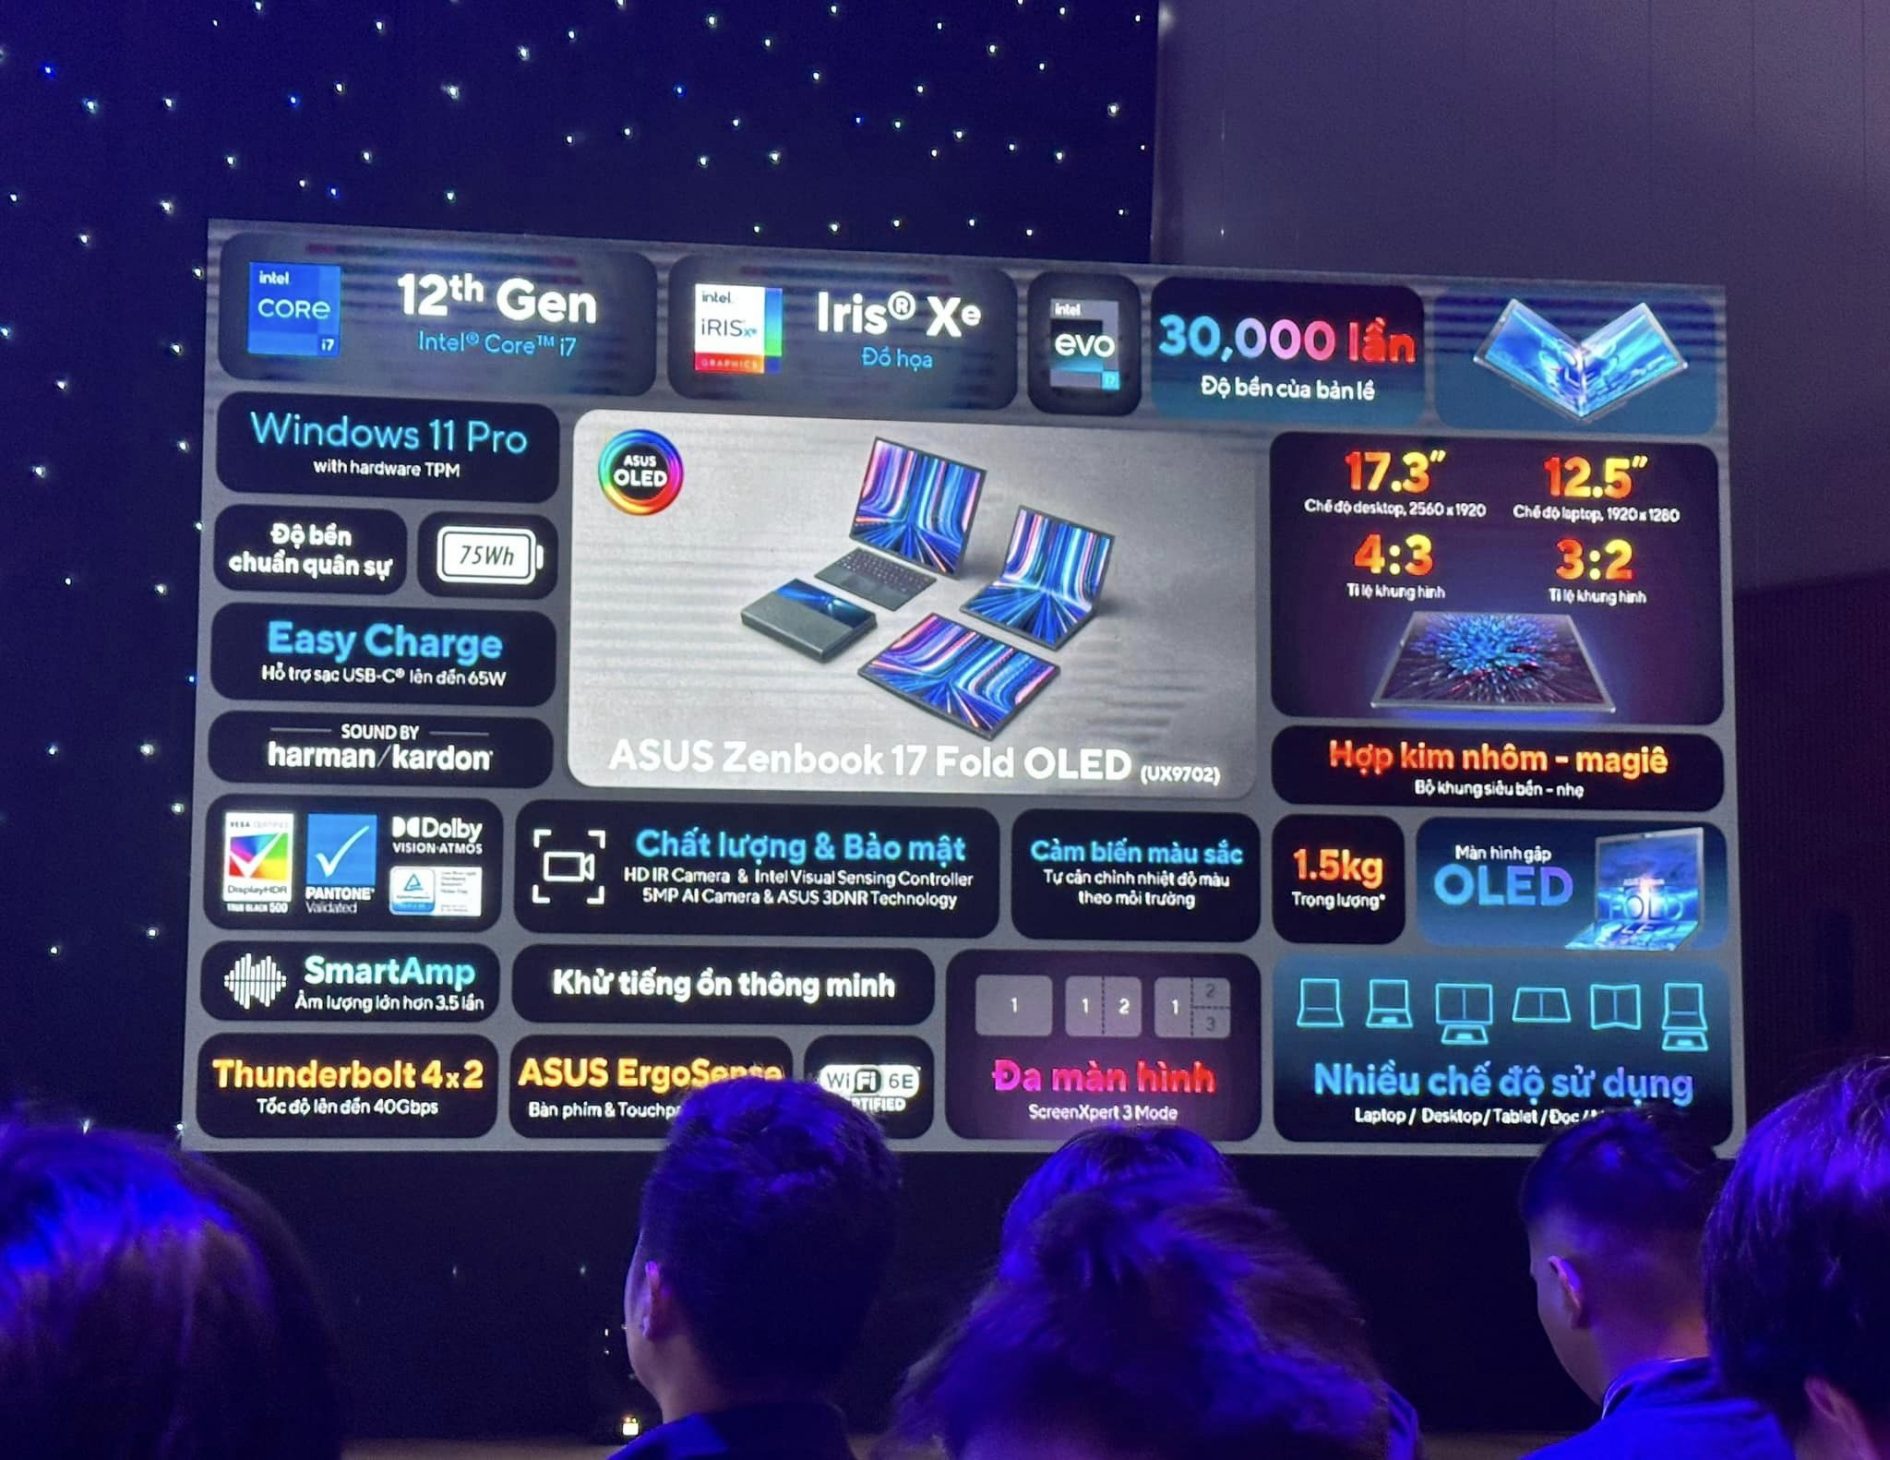 ASUS Việt Nam ra mắt Zenbook 17 Fold OLED màn hình gập độc đáo cho người sành điệu - 316410502 5705051849549871 360692284562905996 n